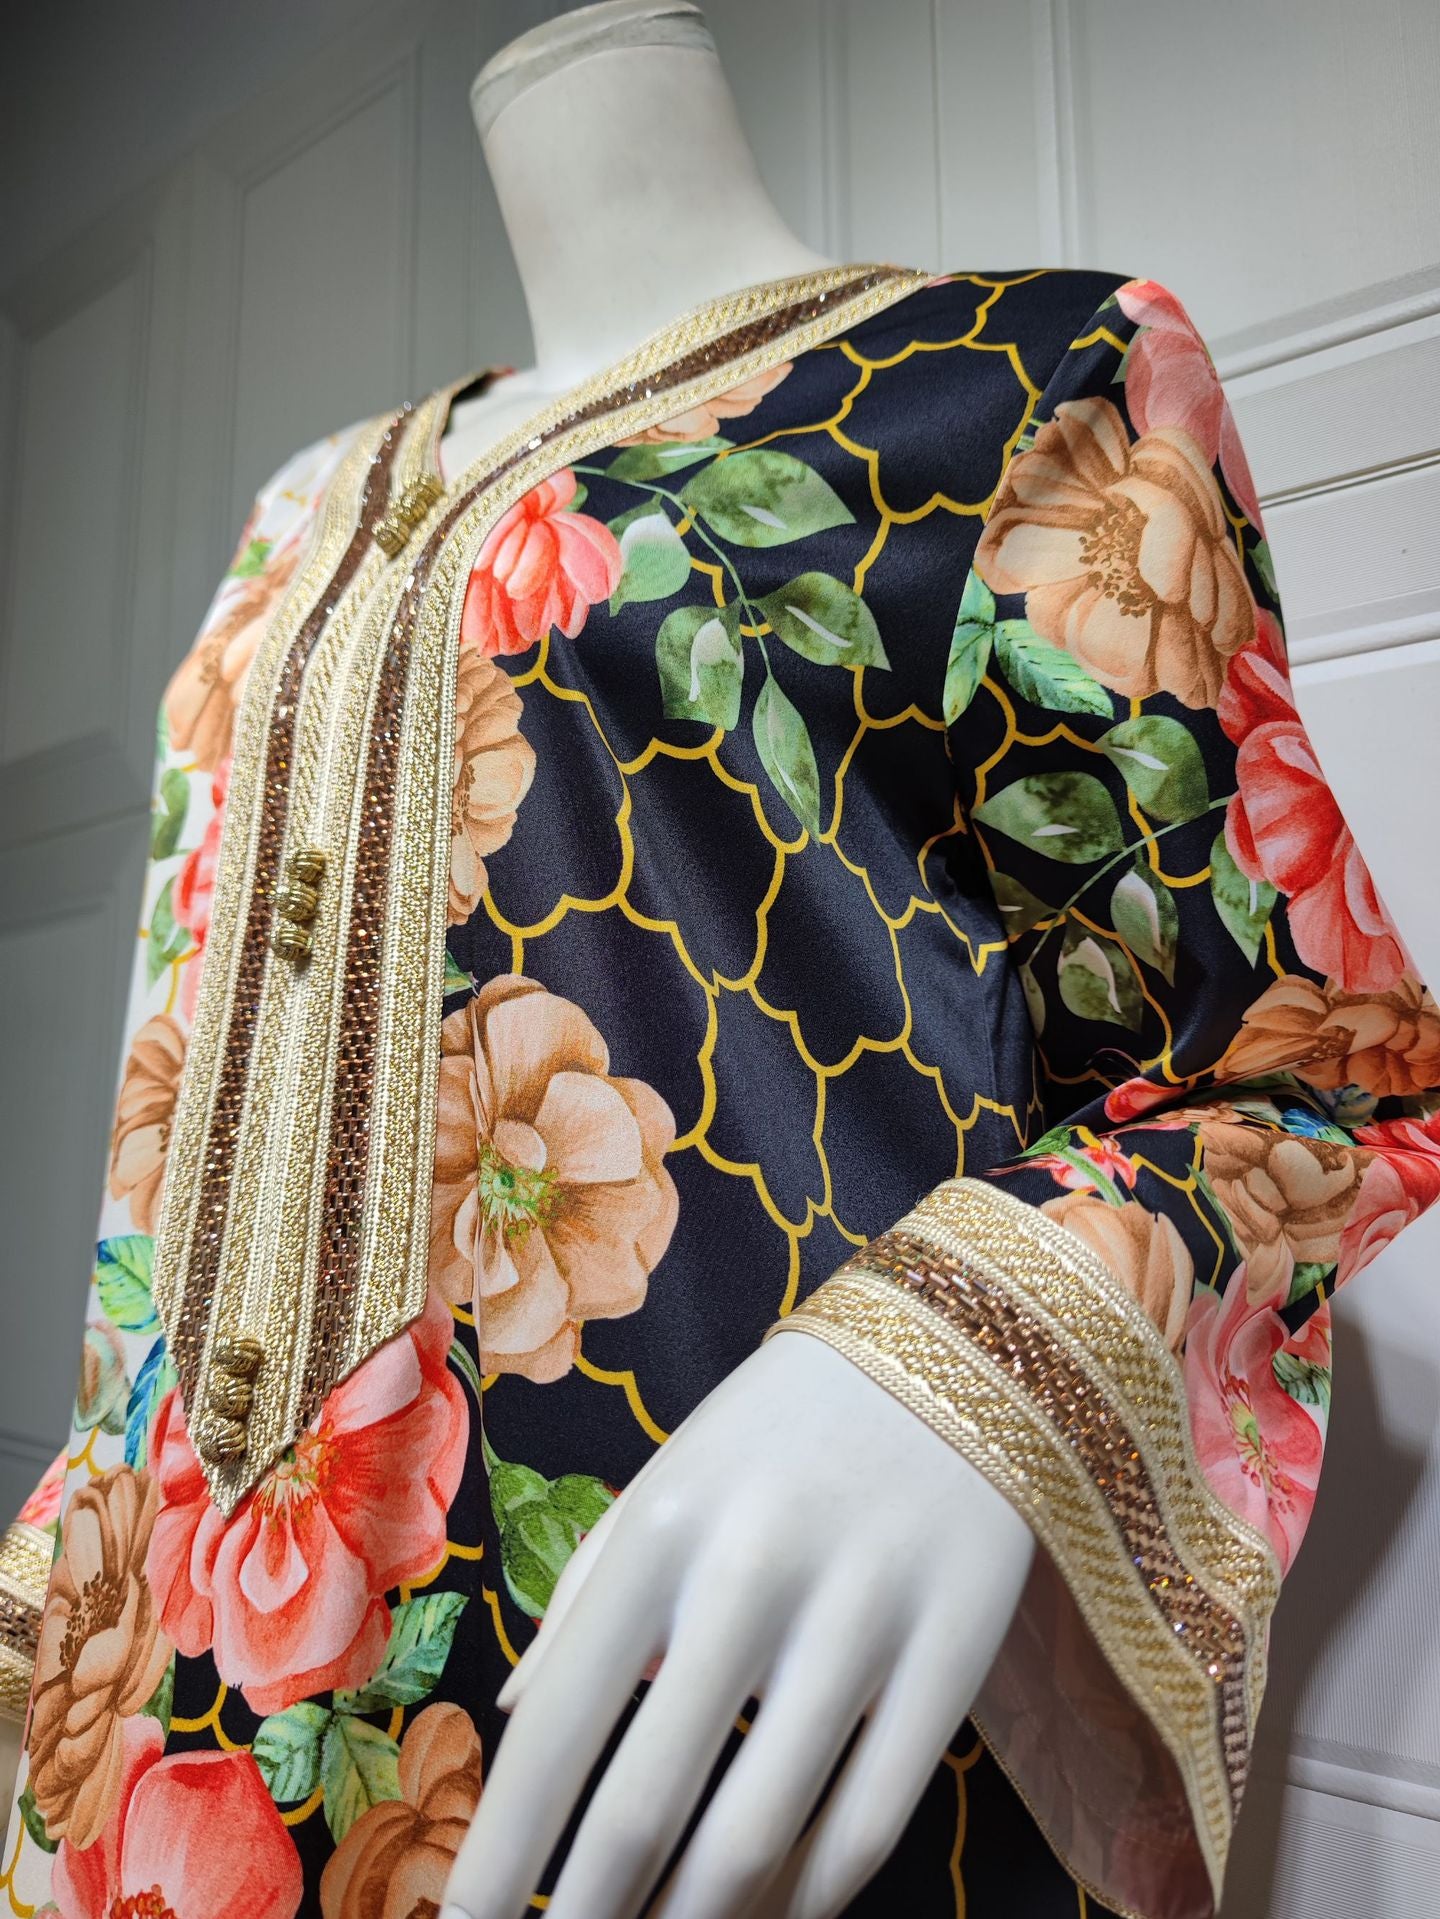 BamBam Swing Ethnic Lace Beaded Long Sleeve Loose abaya Positioning Print Muslim Dress - BamBam